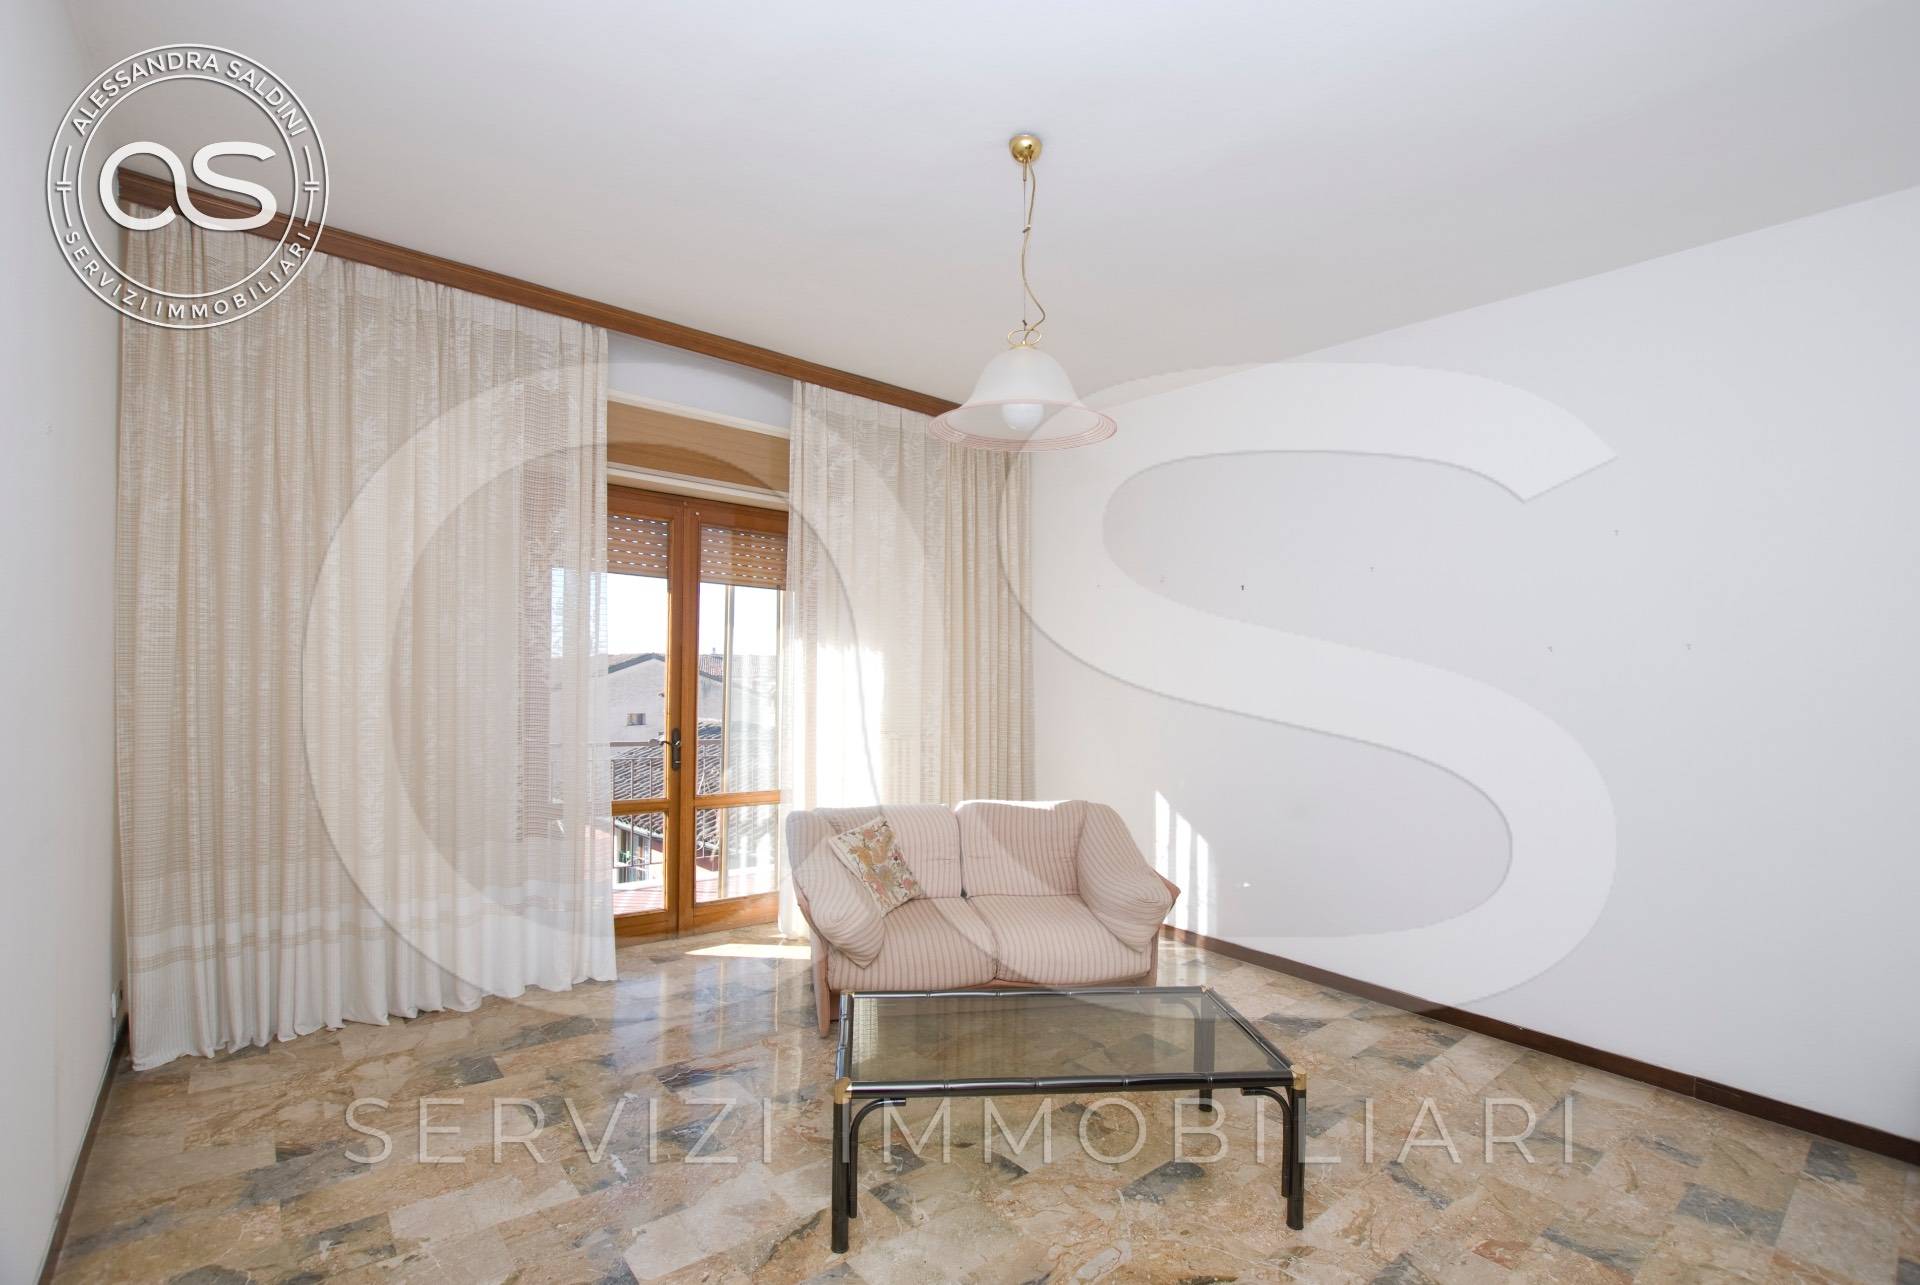 Appartamento in vendita a Capriano del Colle, 5 locali, prezzo € 129.000 | PortaleAgenzieImmobiliari.it